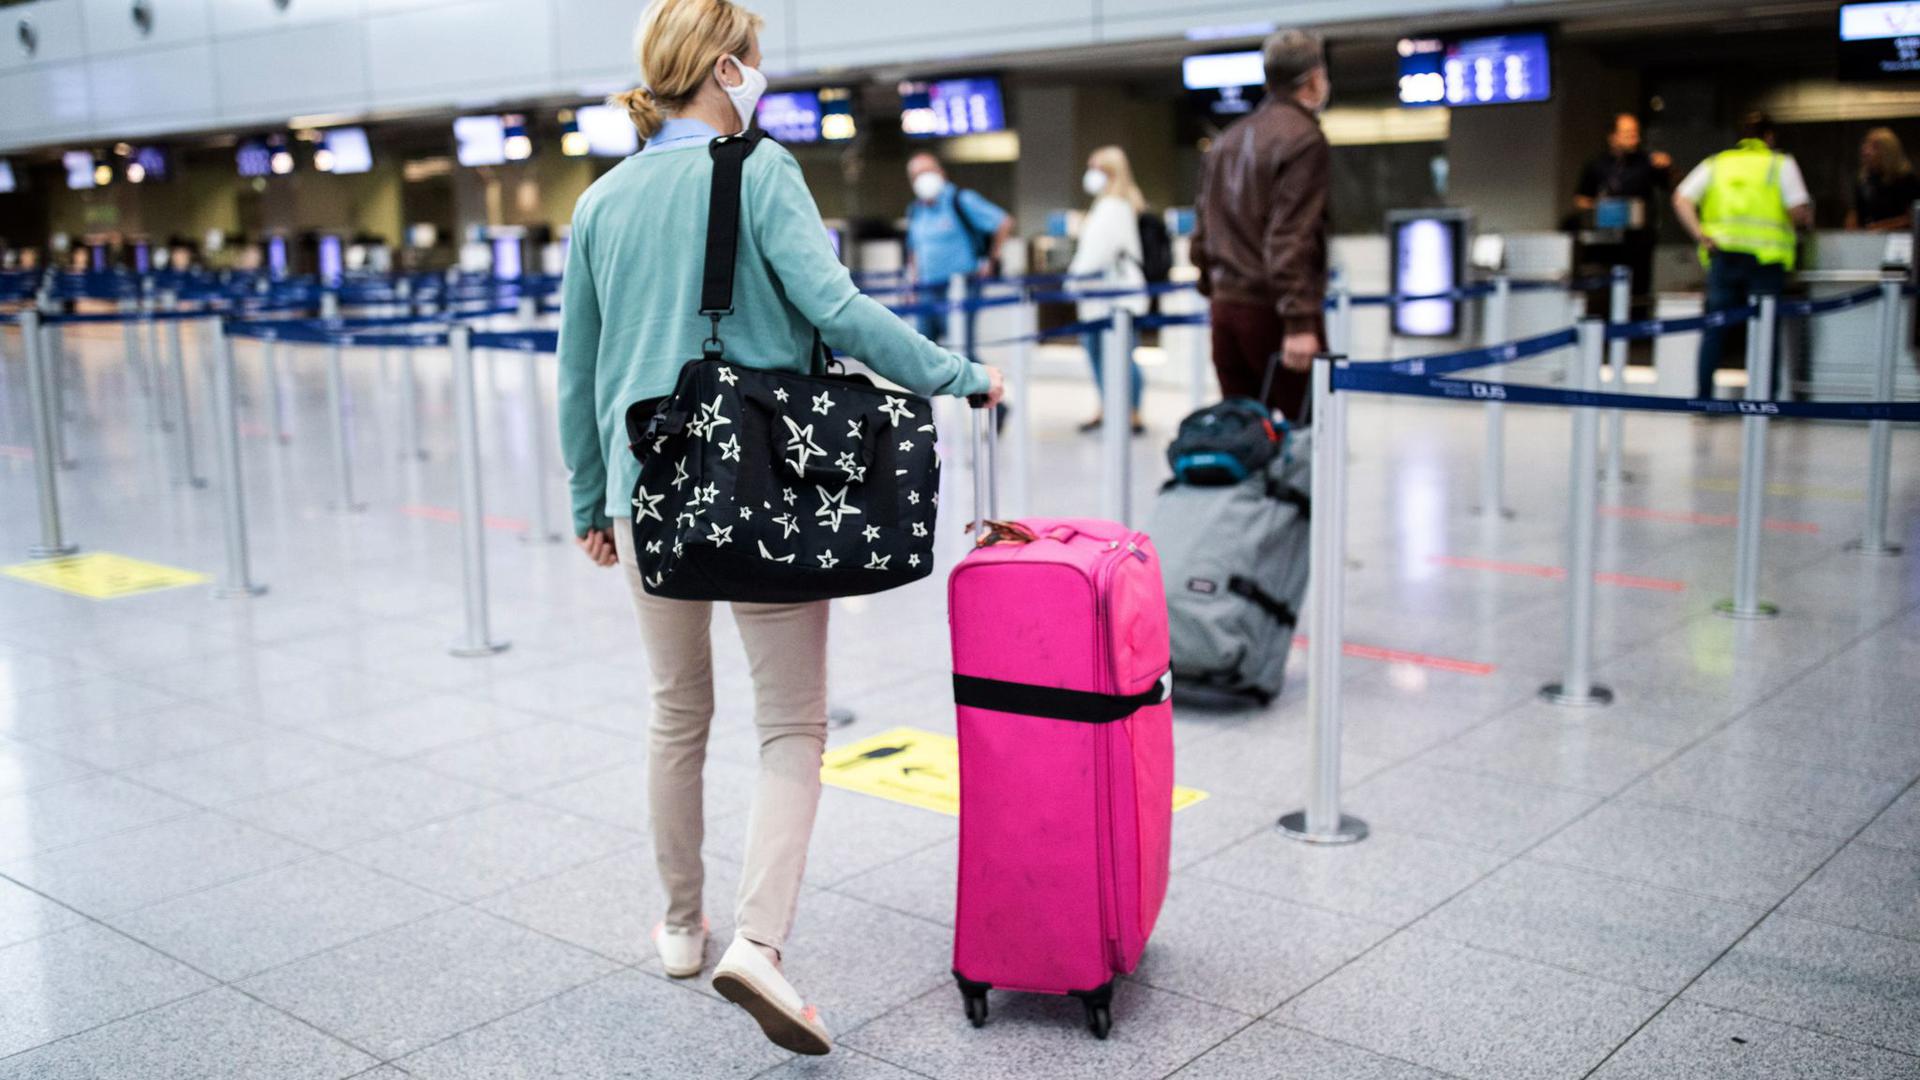 Passagiere sollen mit dem Smartphone am Flughafen künftig sämtliche Formalitäten erledigen können.